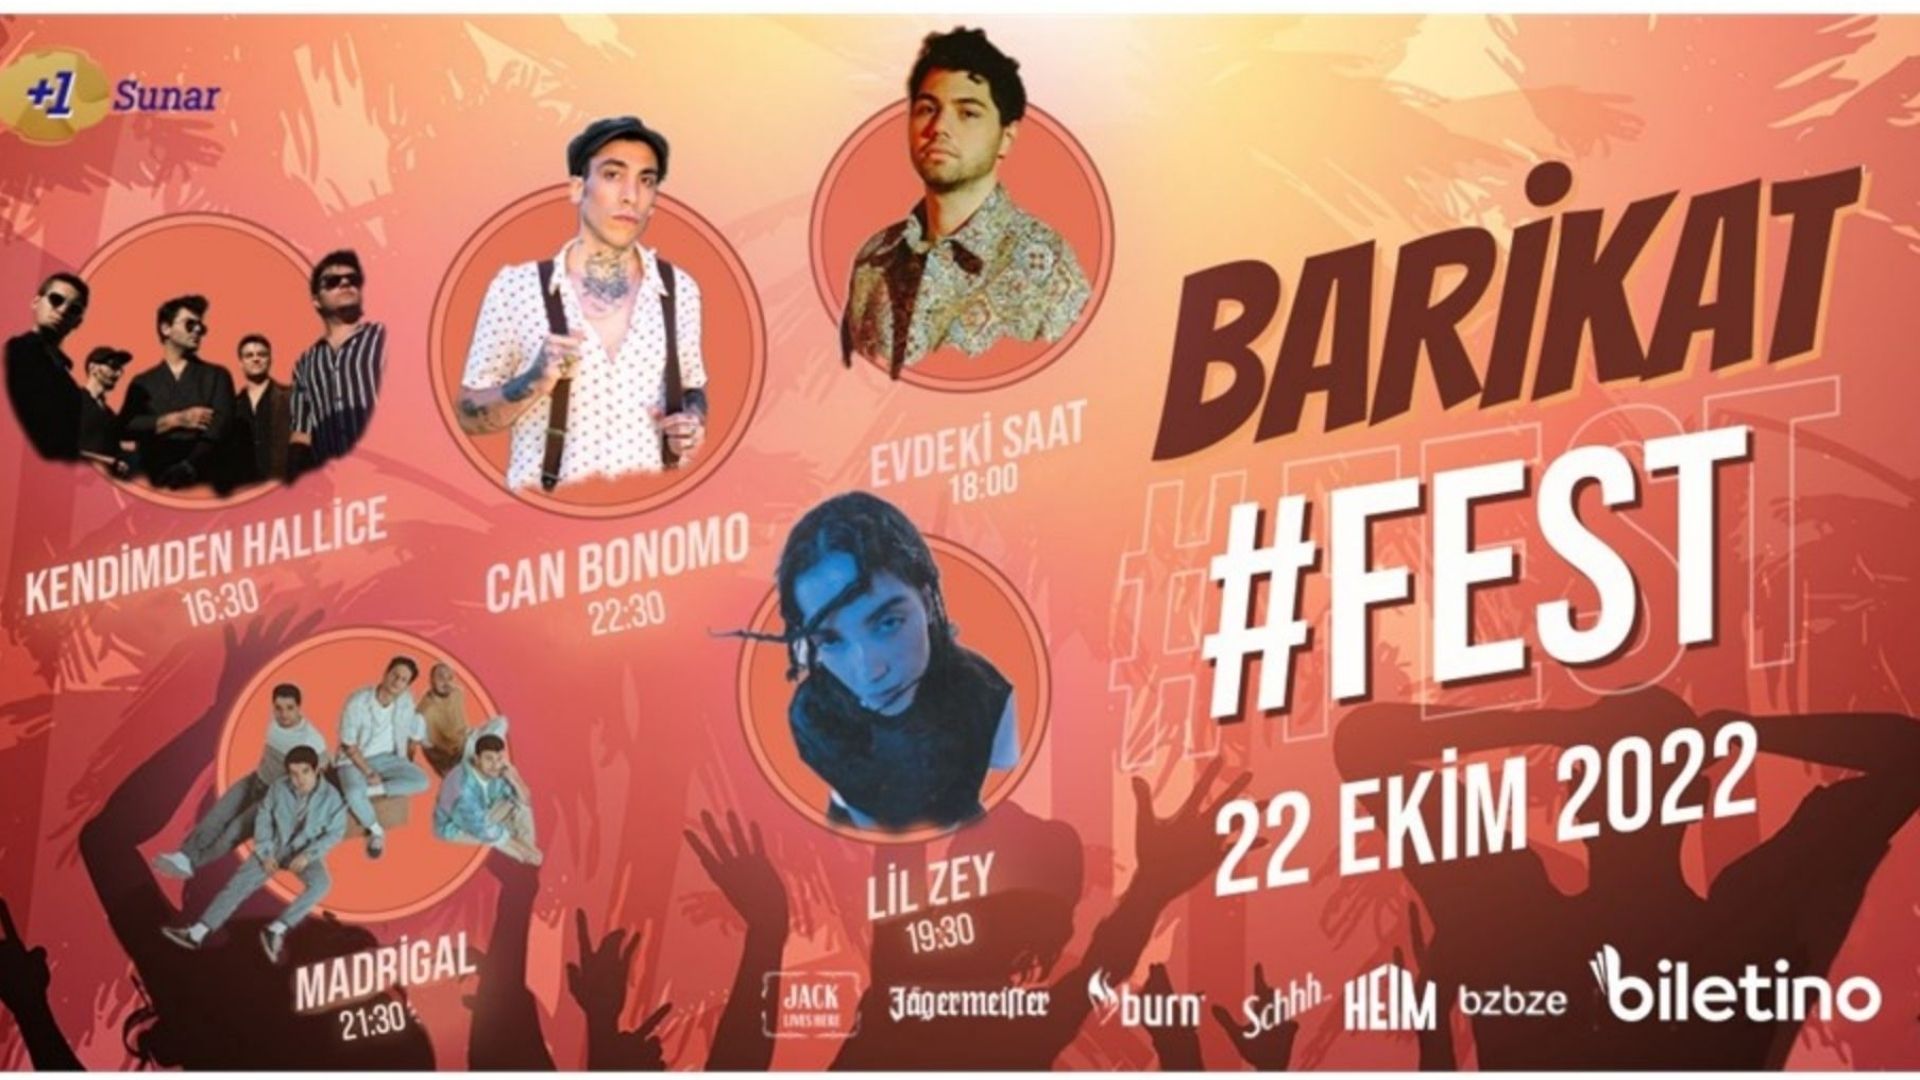 Barikatfest 2022 festival